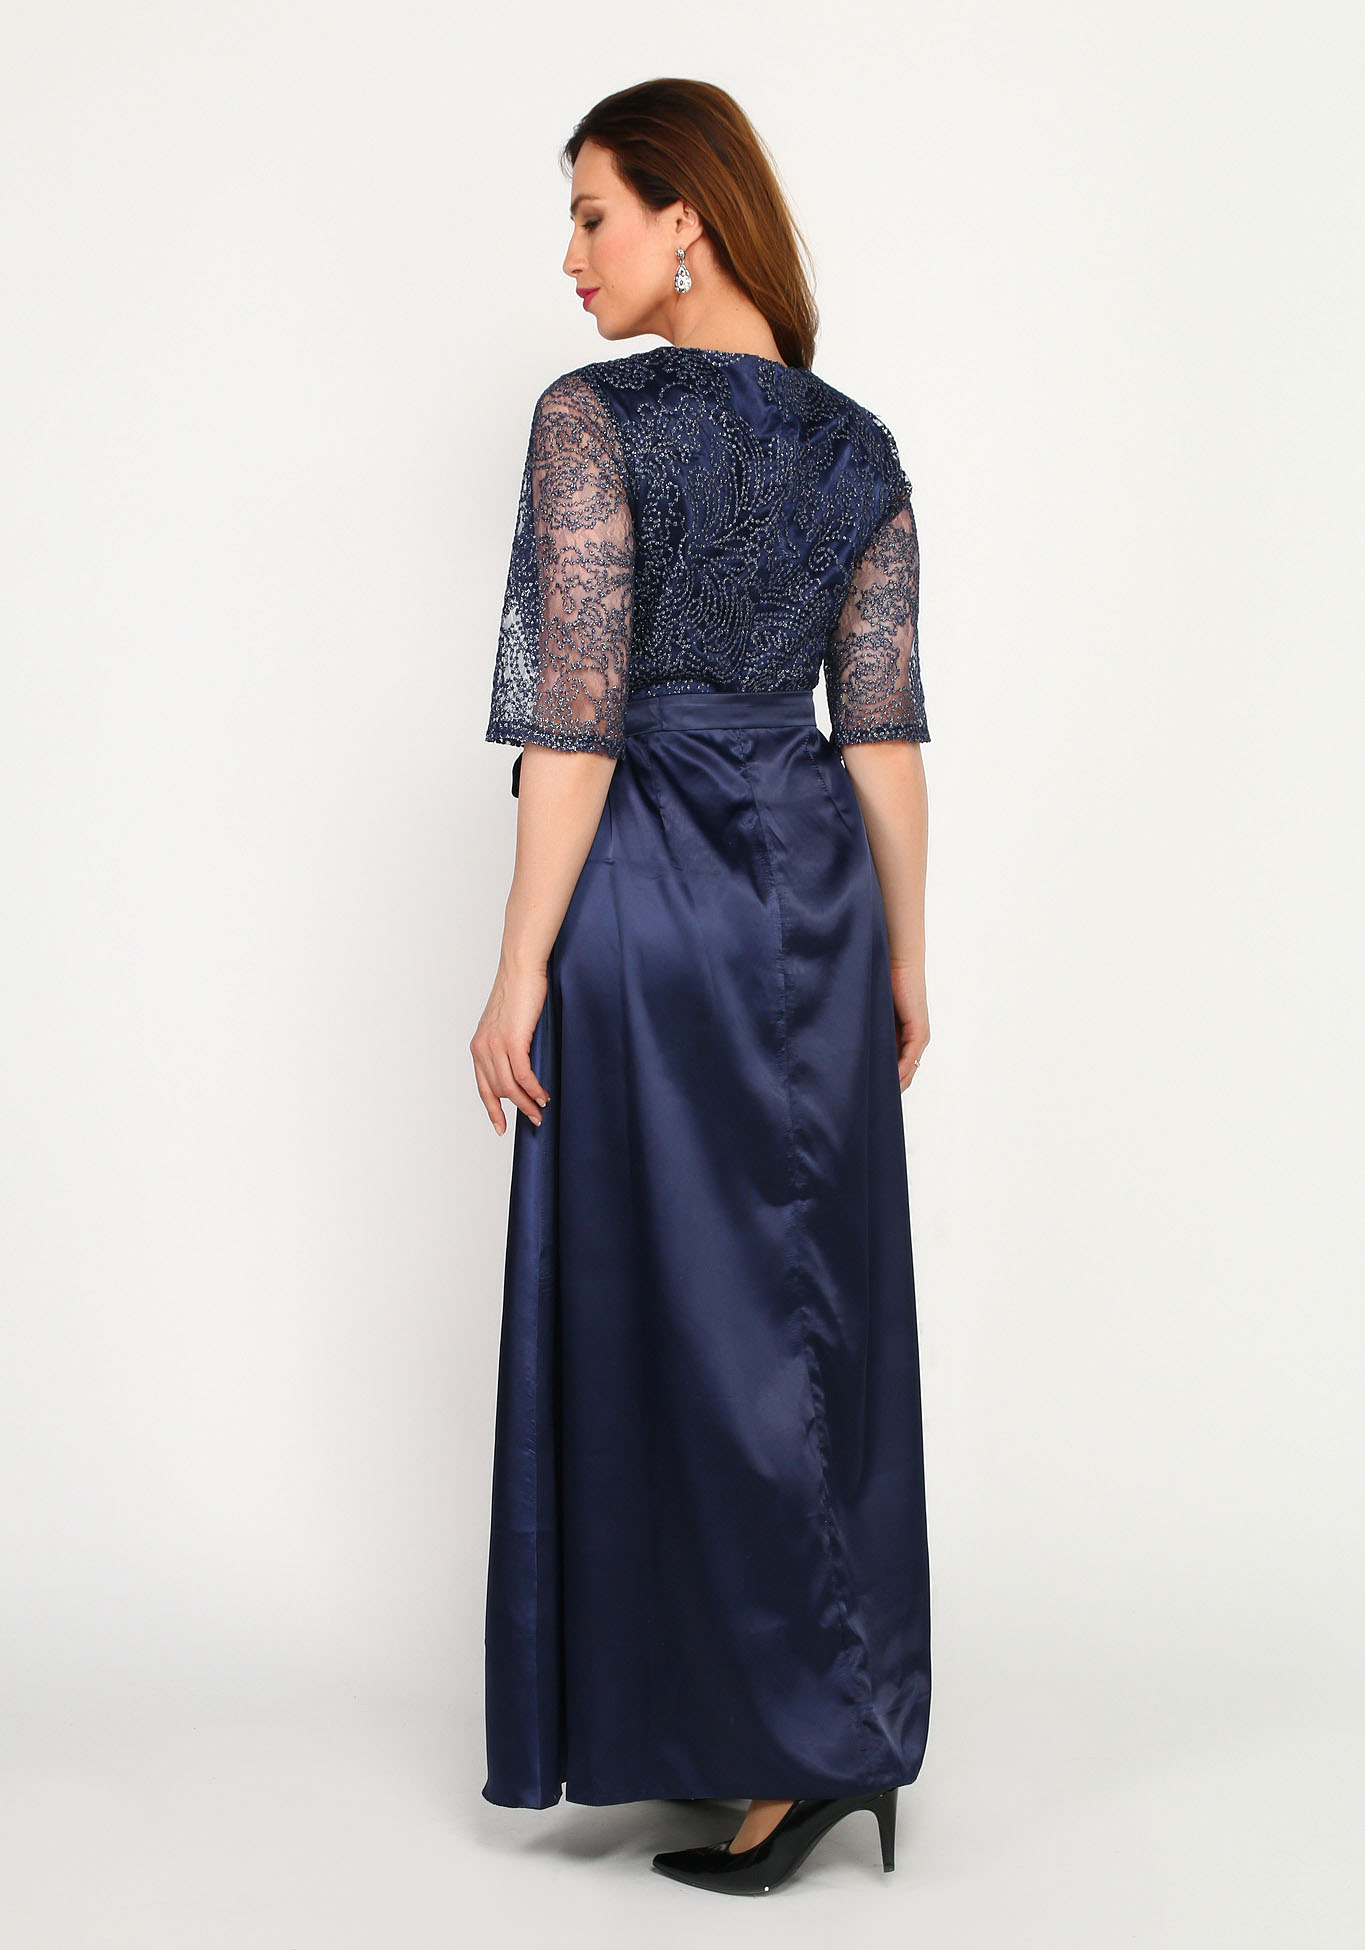 Платье вечернее в пол с кружевной отделкой Bel Fiore, размер 50, цвет синий - фото 4